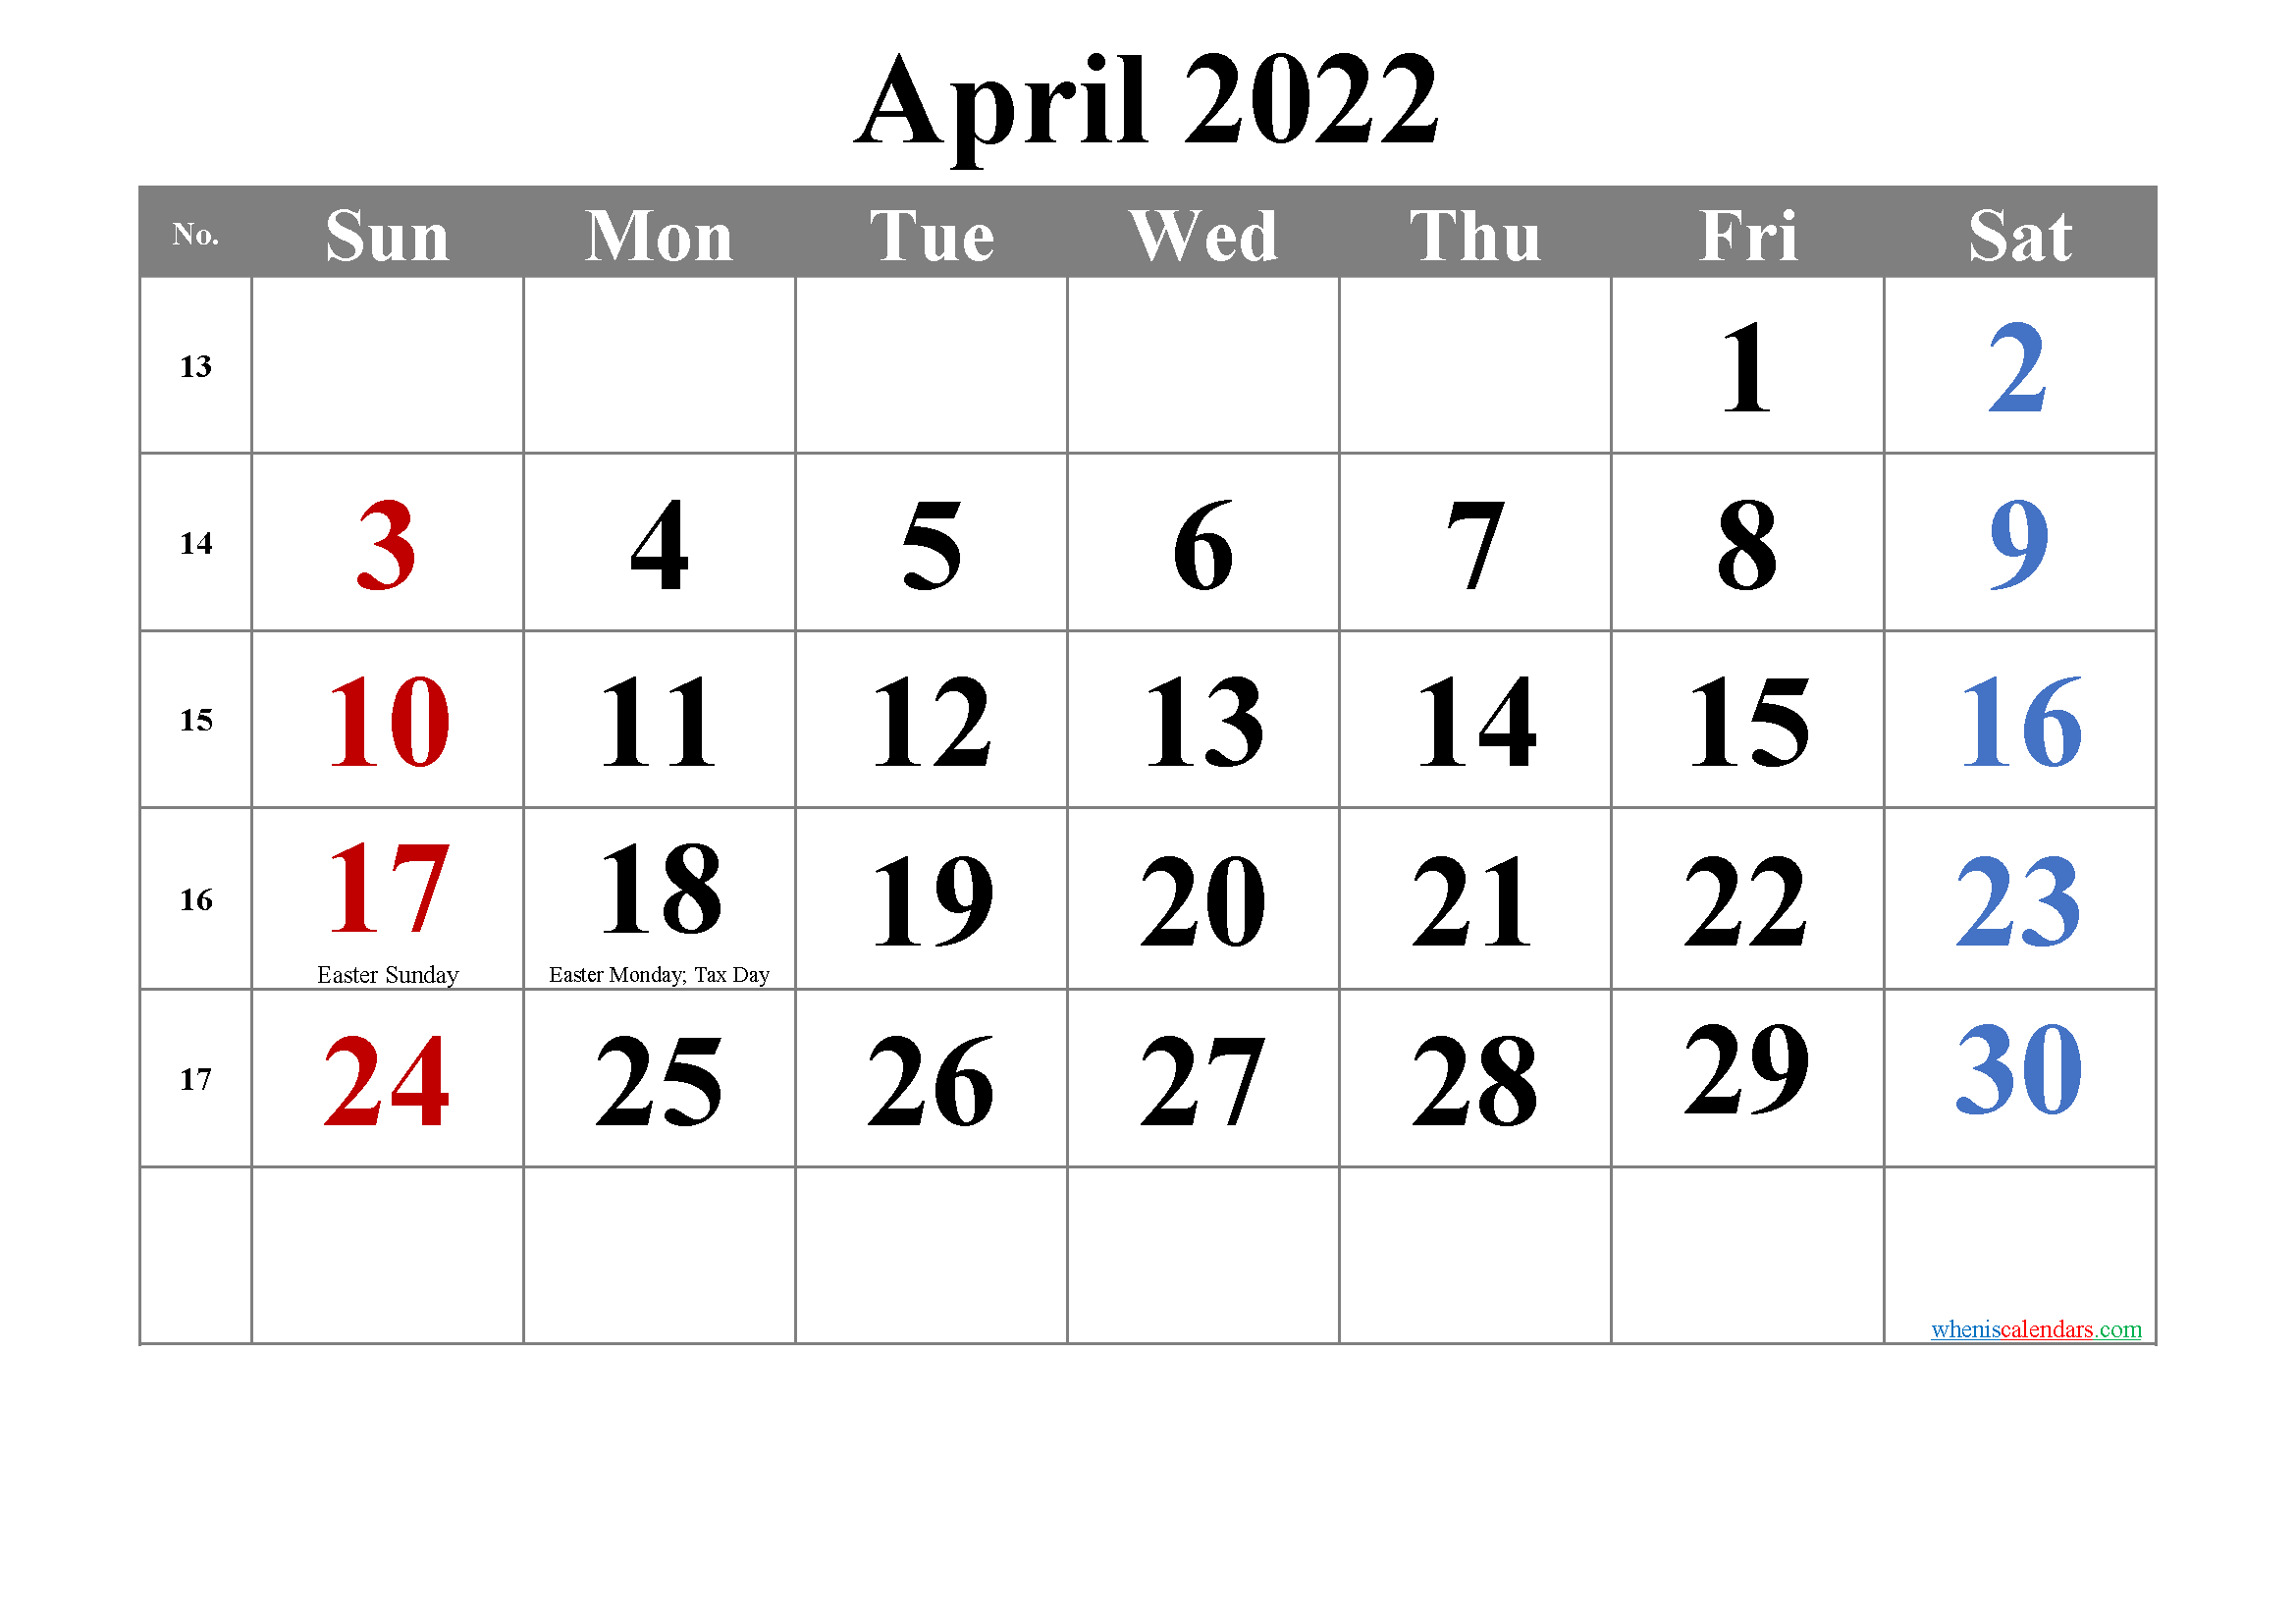 Easter 2022 Calendar April 2022 Calendar With Holidays Printable-Template No.tr22M4